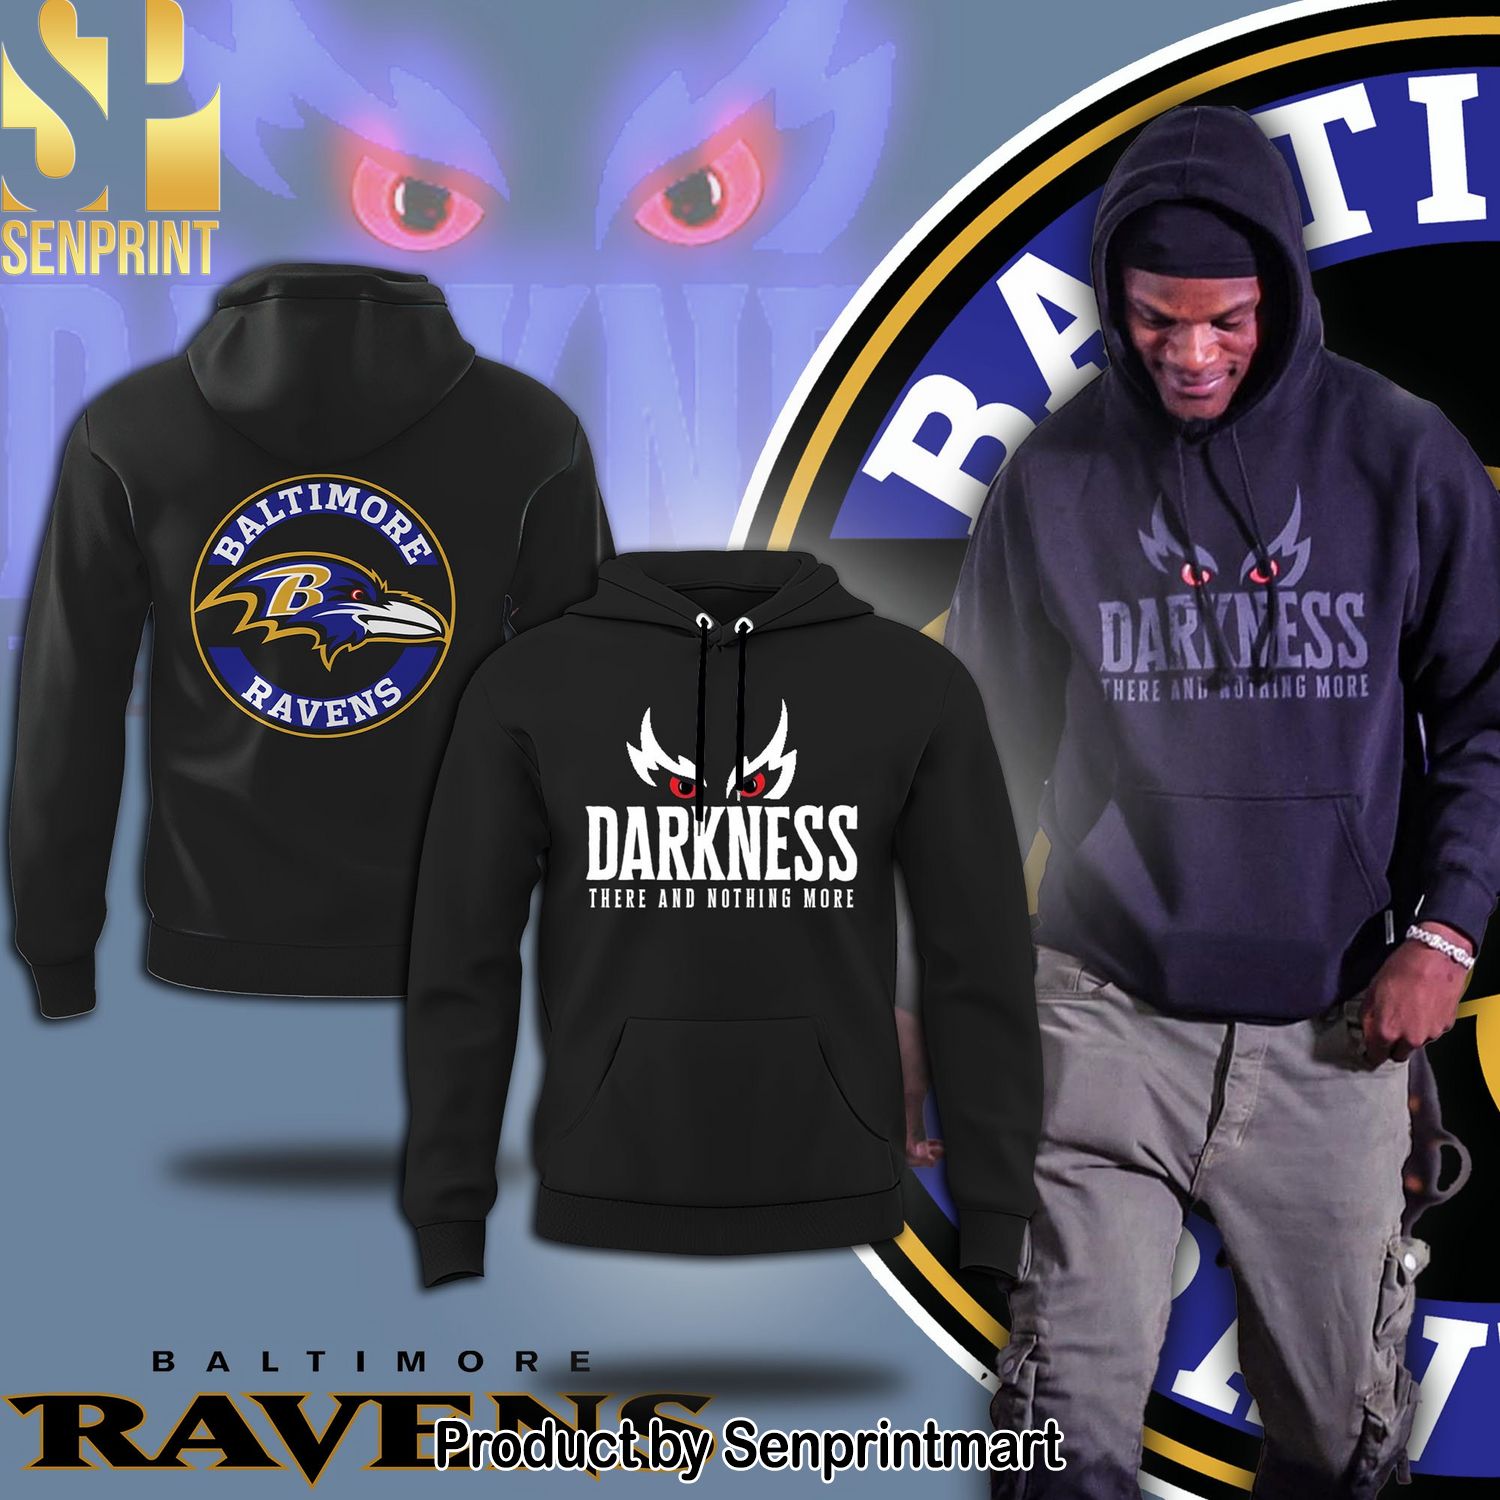 Baltimore Ravens Darkness Shirt version Black